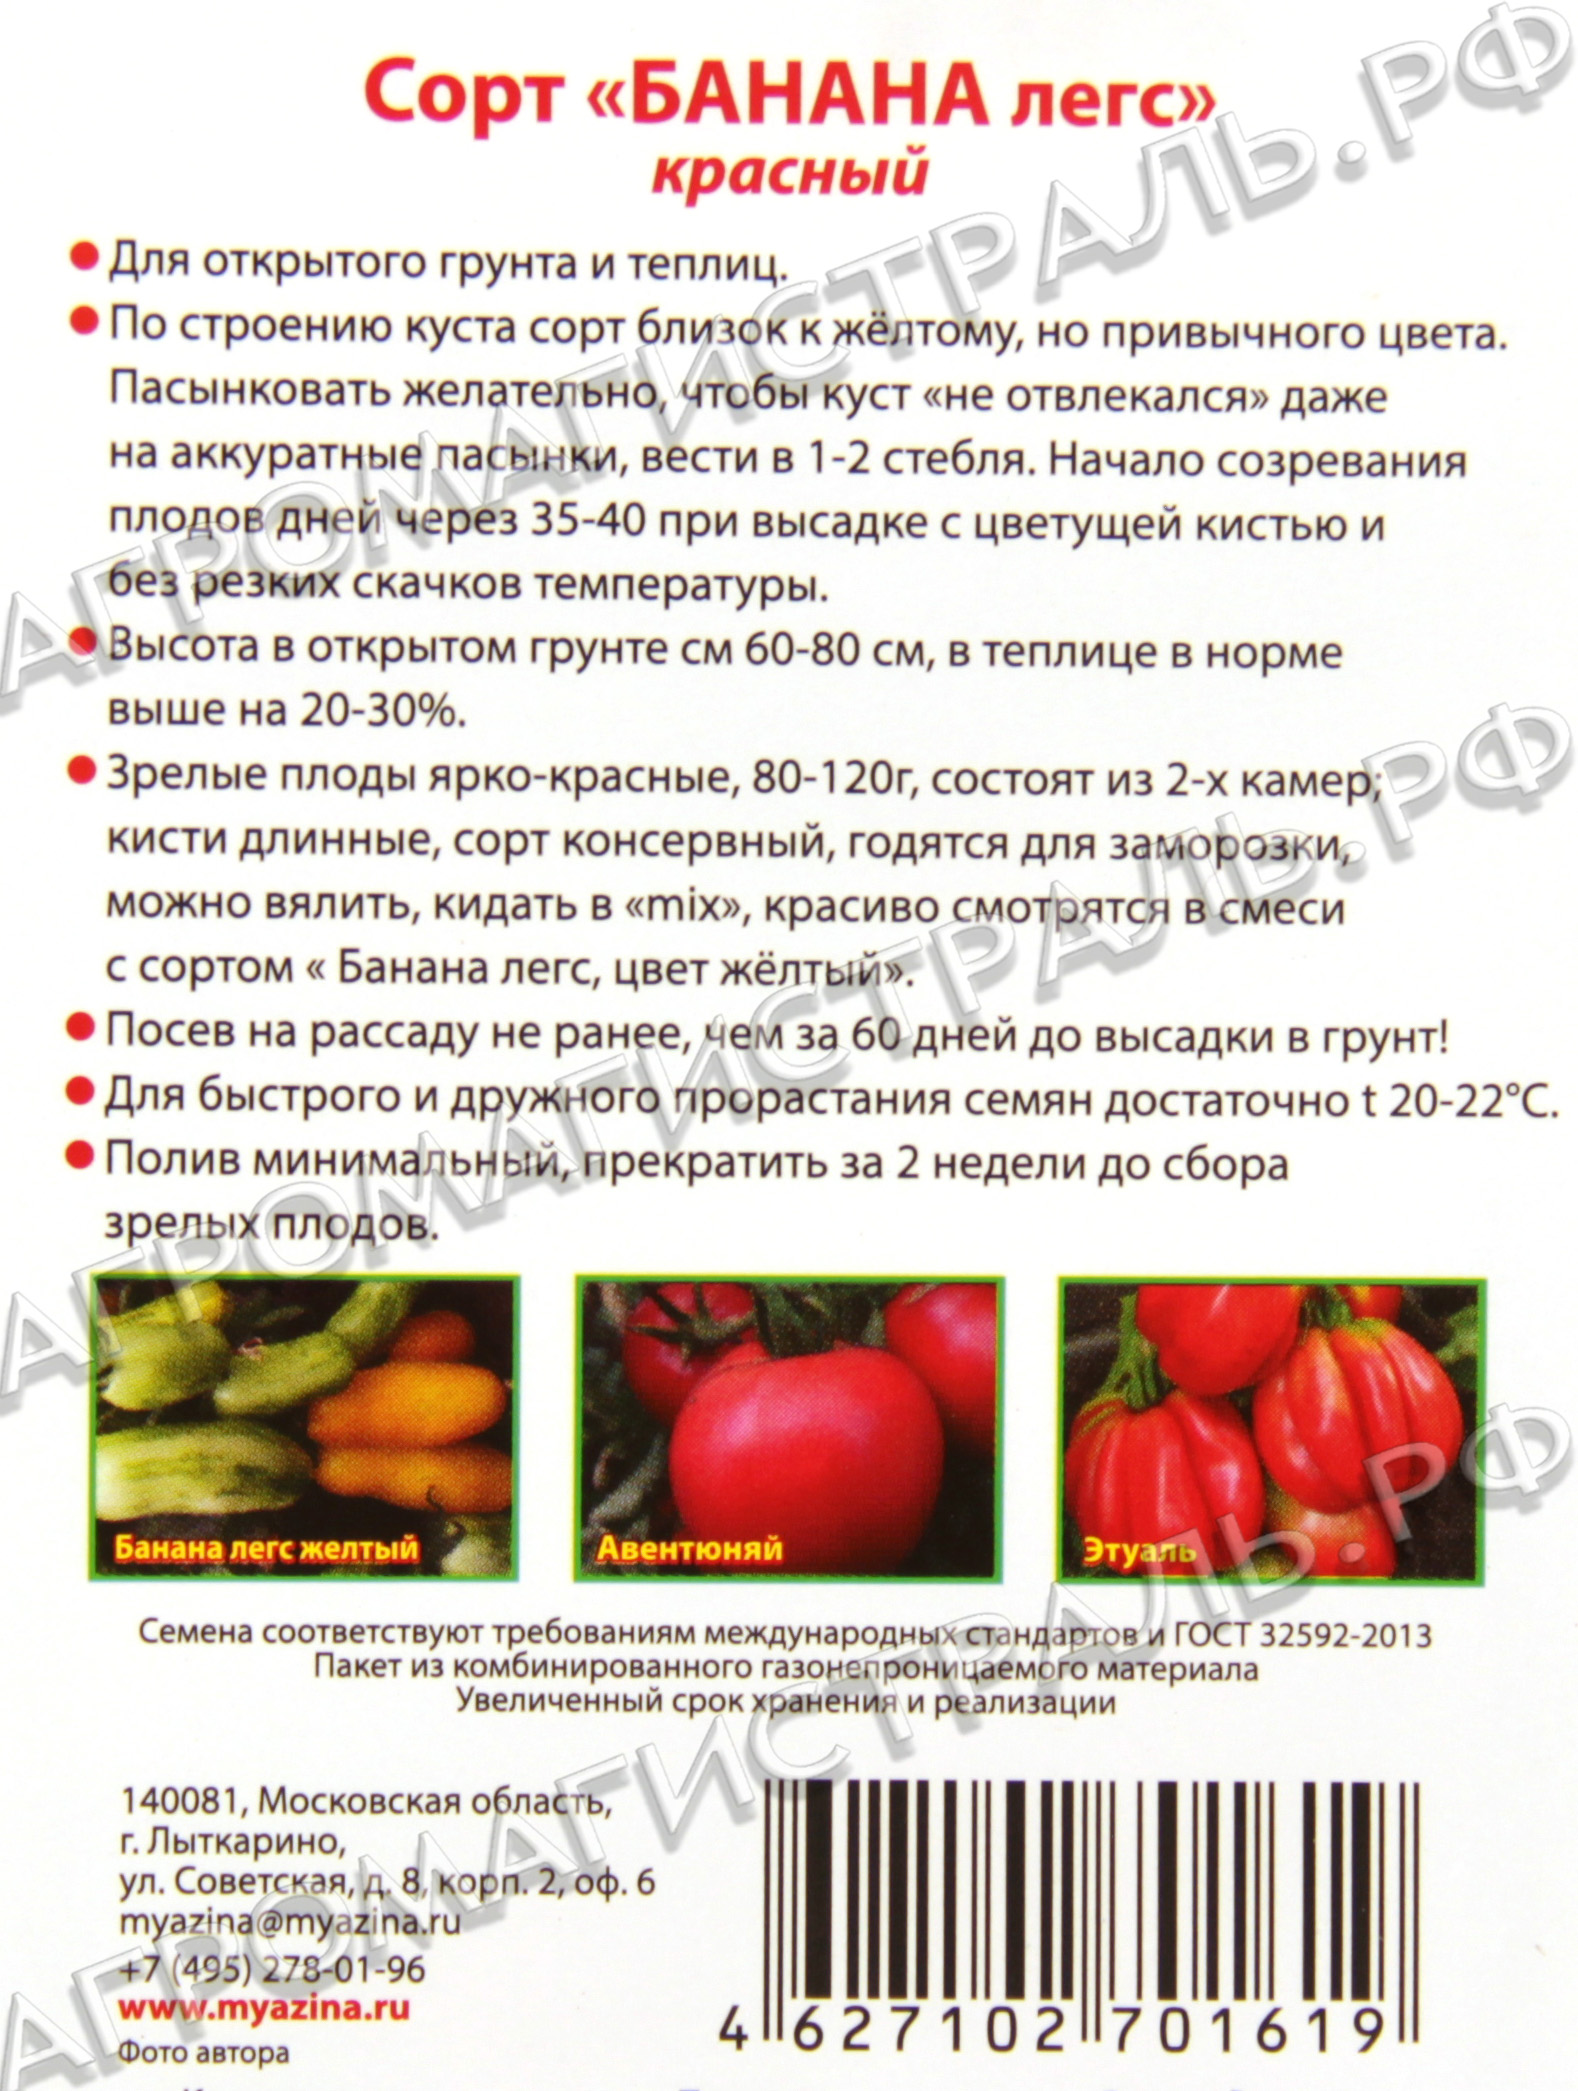 Описание лучших сортов авторских томатов любови мязиной, выращивание